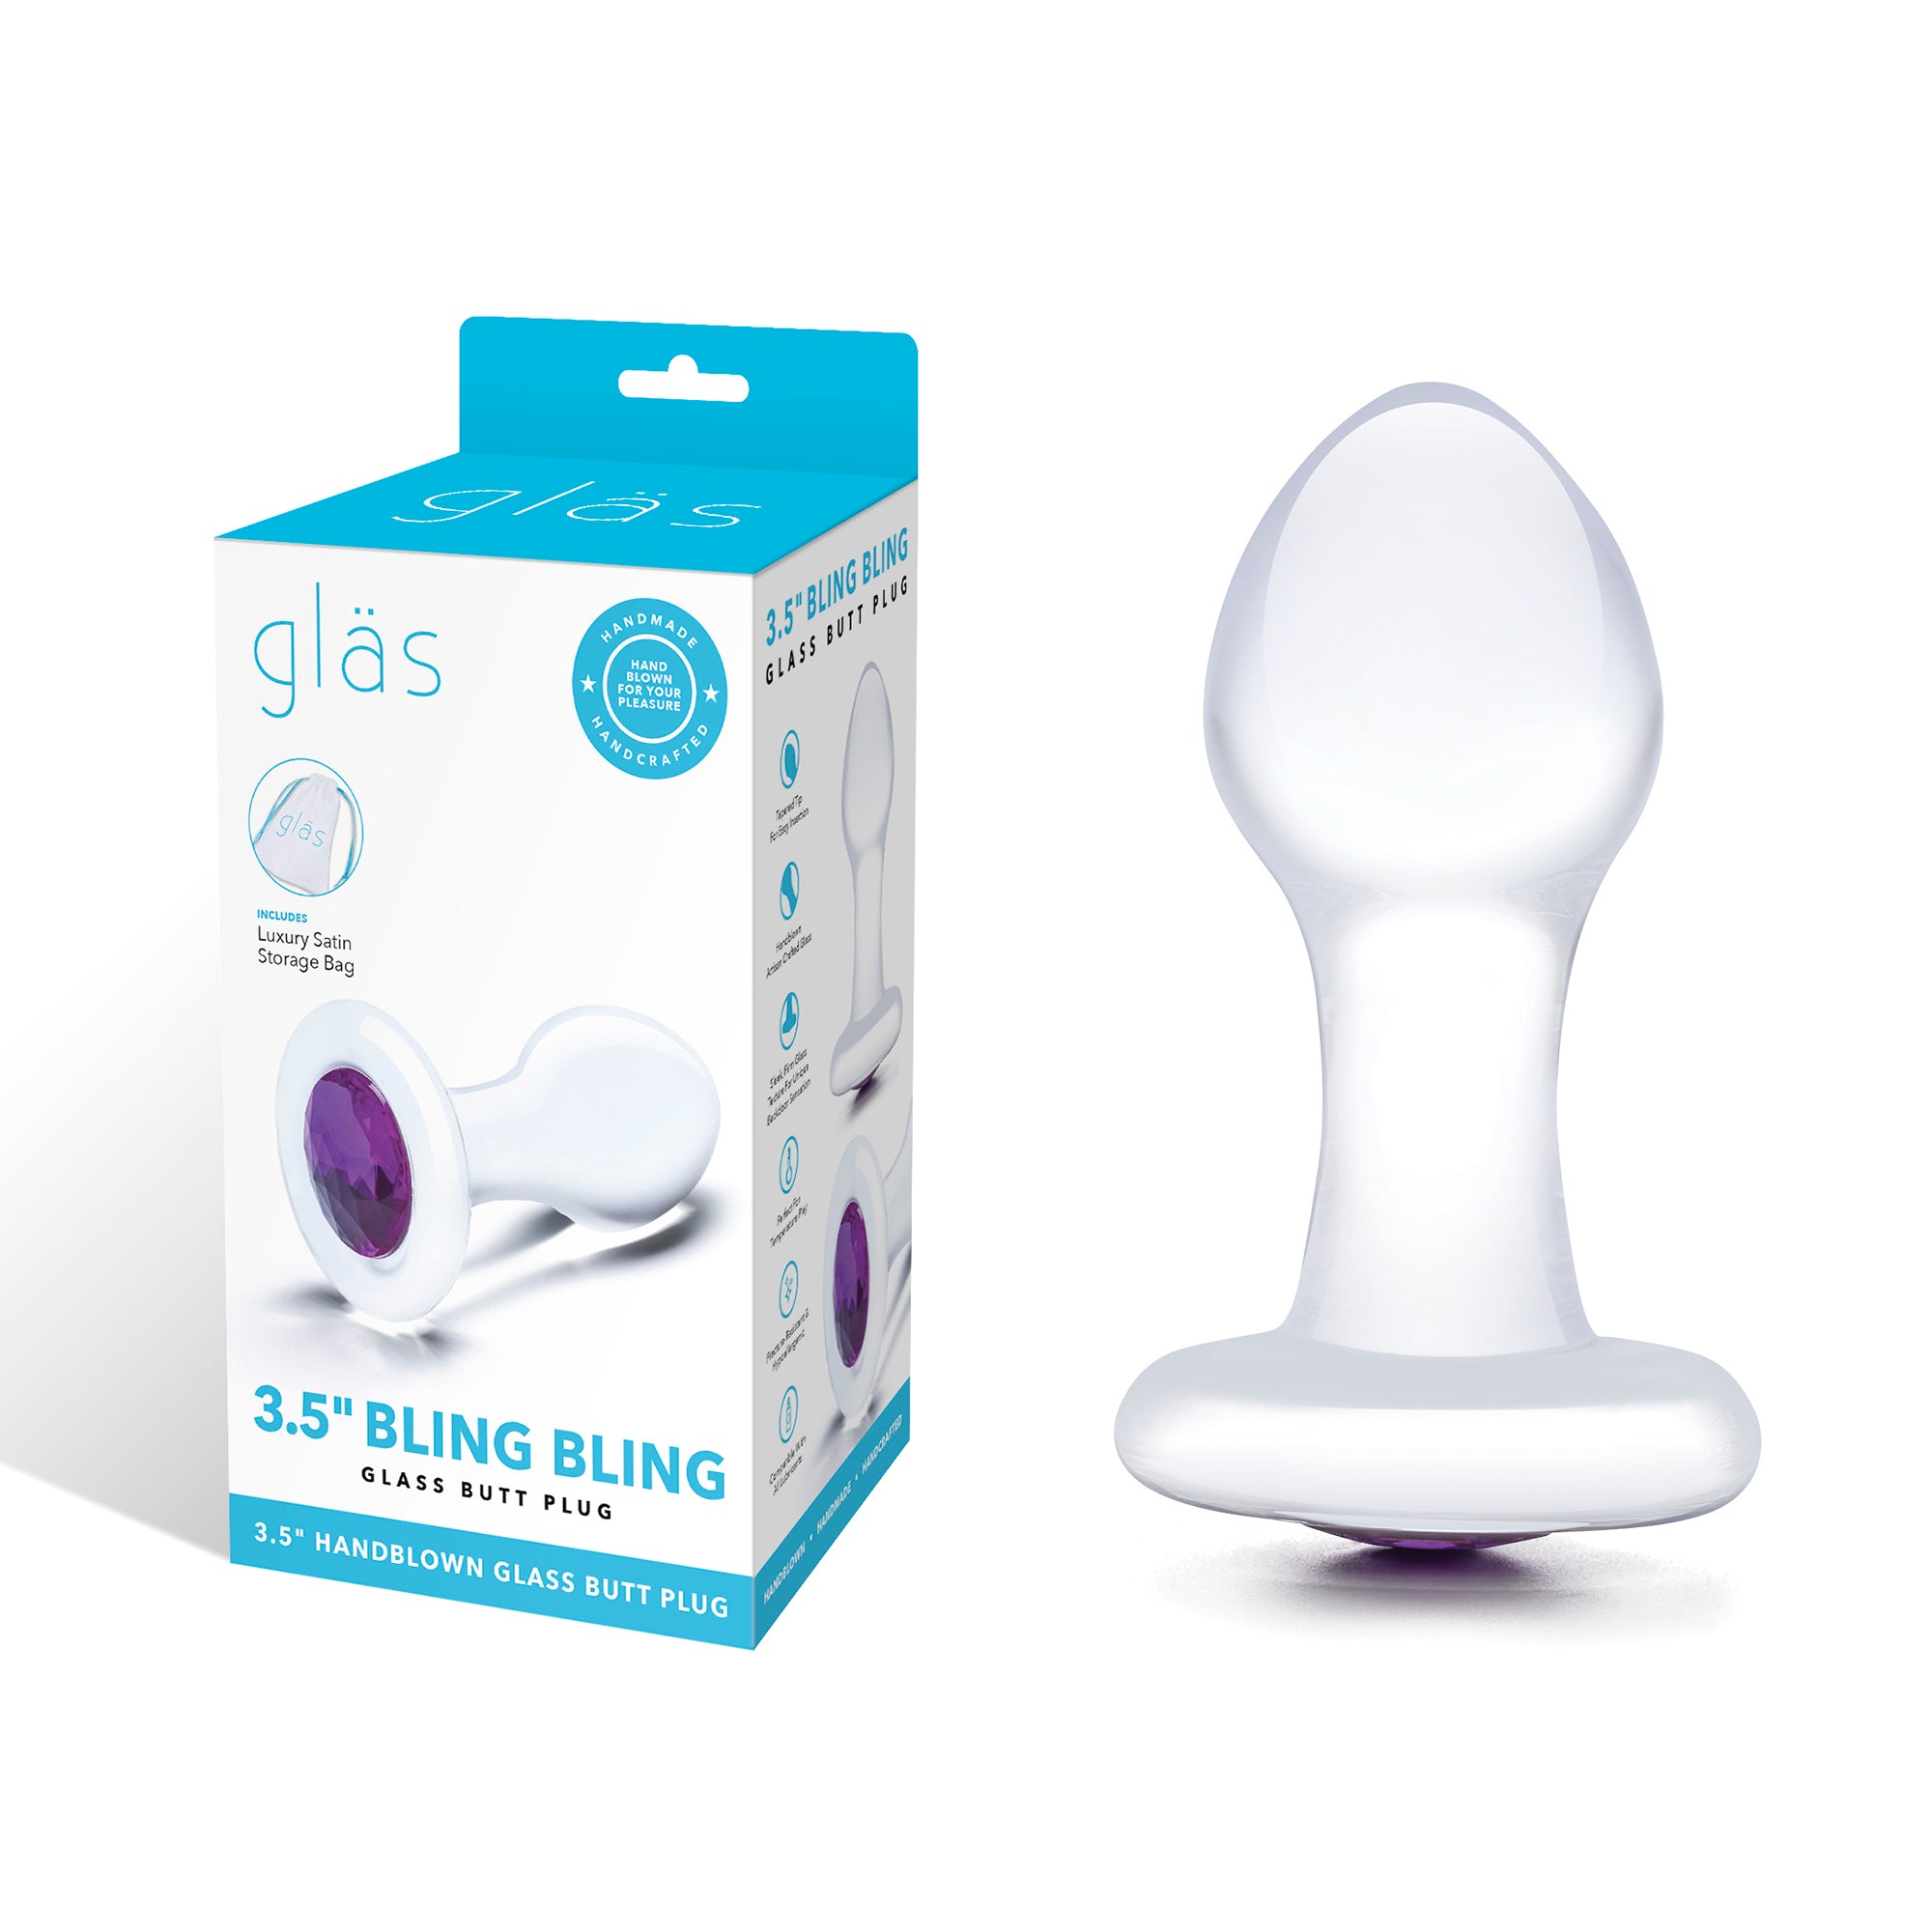 3.5" Bling Bling Glass Butt Plug